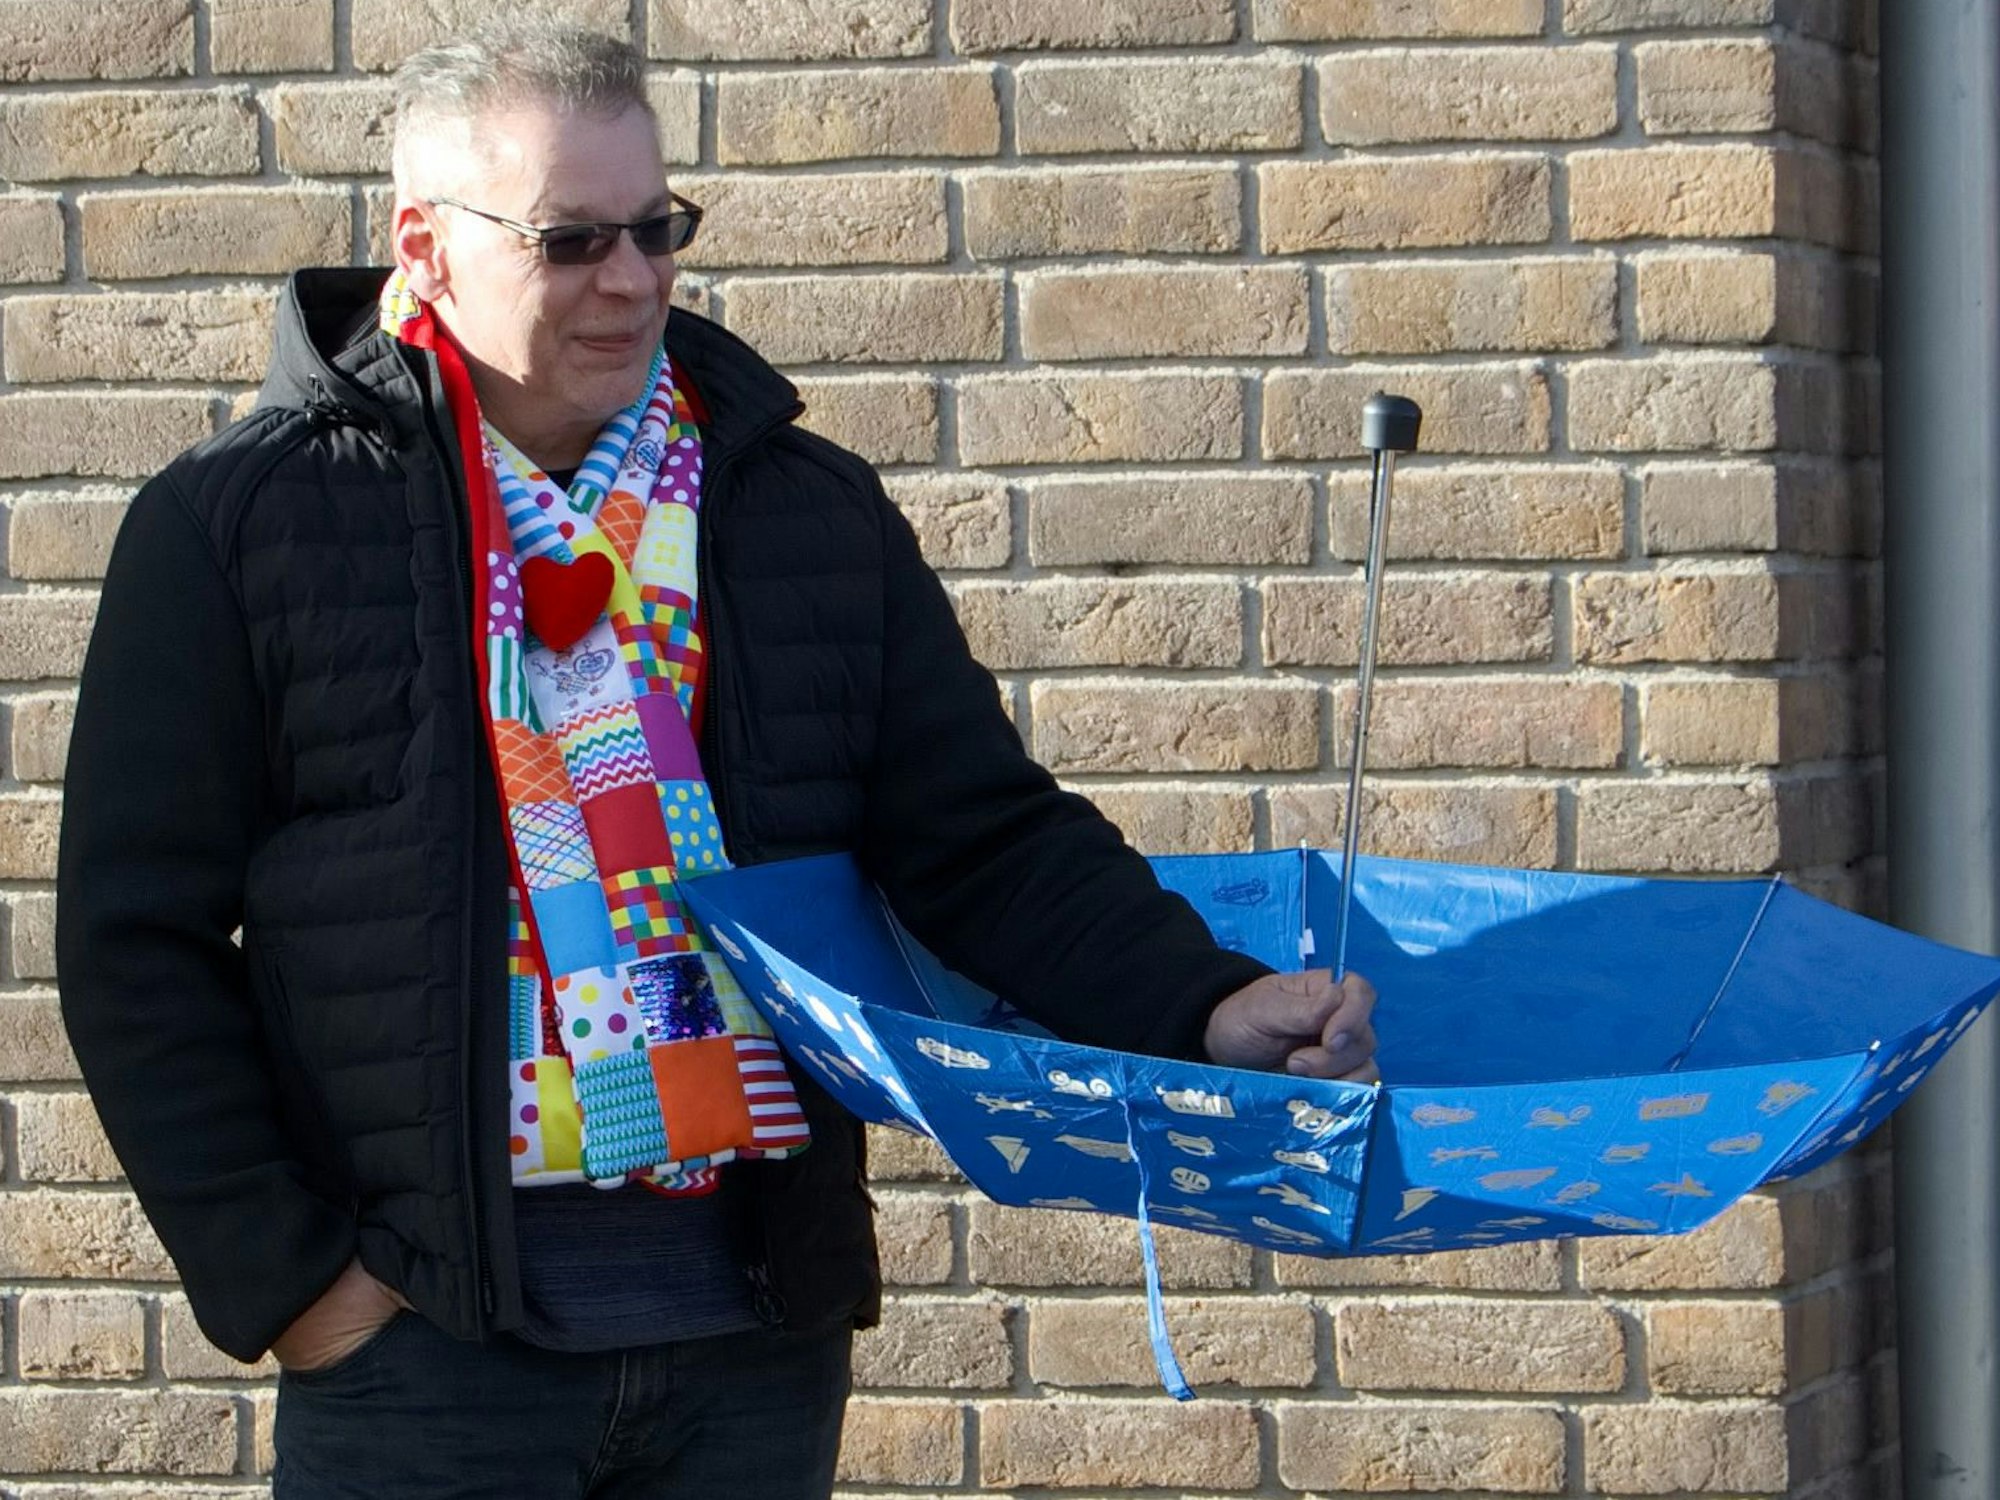 Profkarnevalist Stefan Bengich, hatte beim Karnevalszug in Weyer als einziger gleich seinen Regenschirm aufgespannt, um die Kamelle abzufangen. Er stammt aus Köln und weiß, wie man's macht.